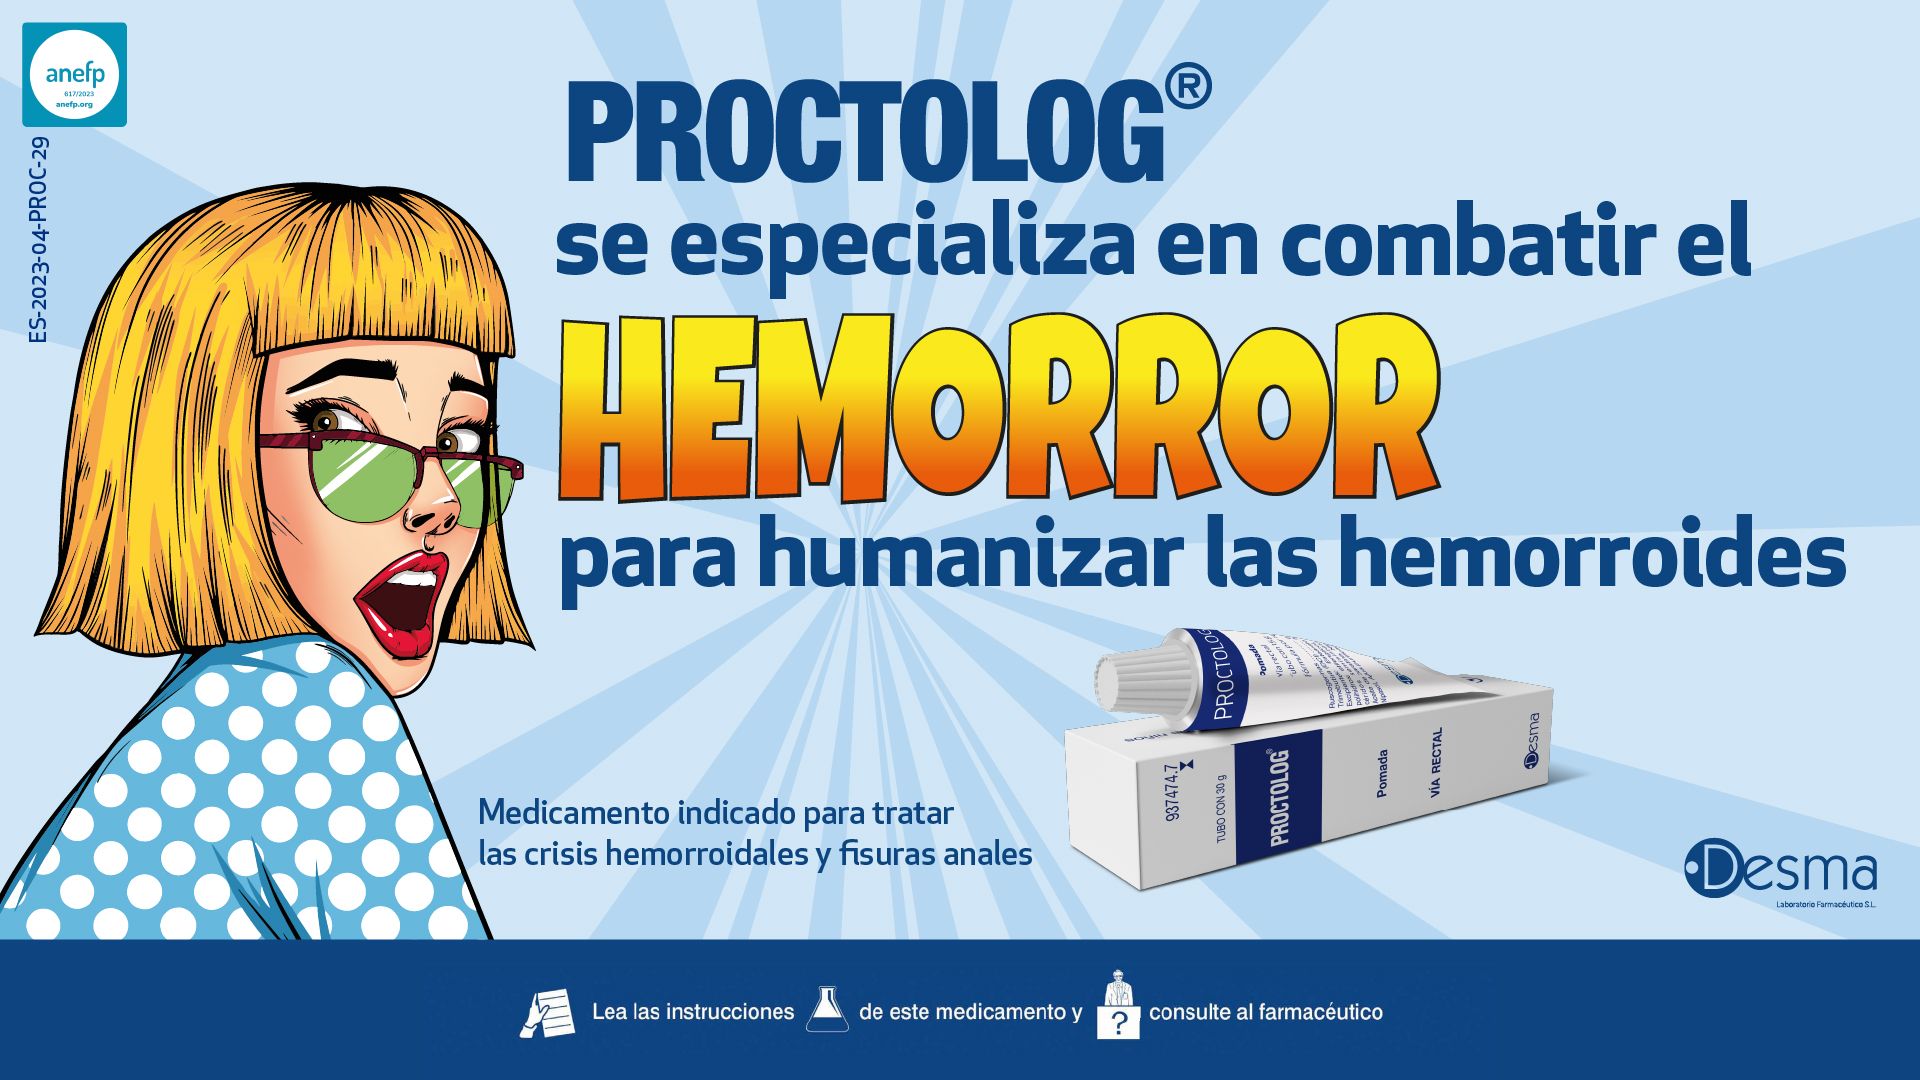 Combatir el 'Hemorror' para humanizar las hemorroides, por Laboratorios Desma